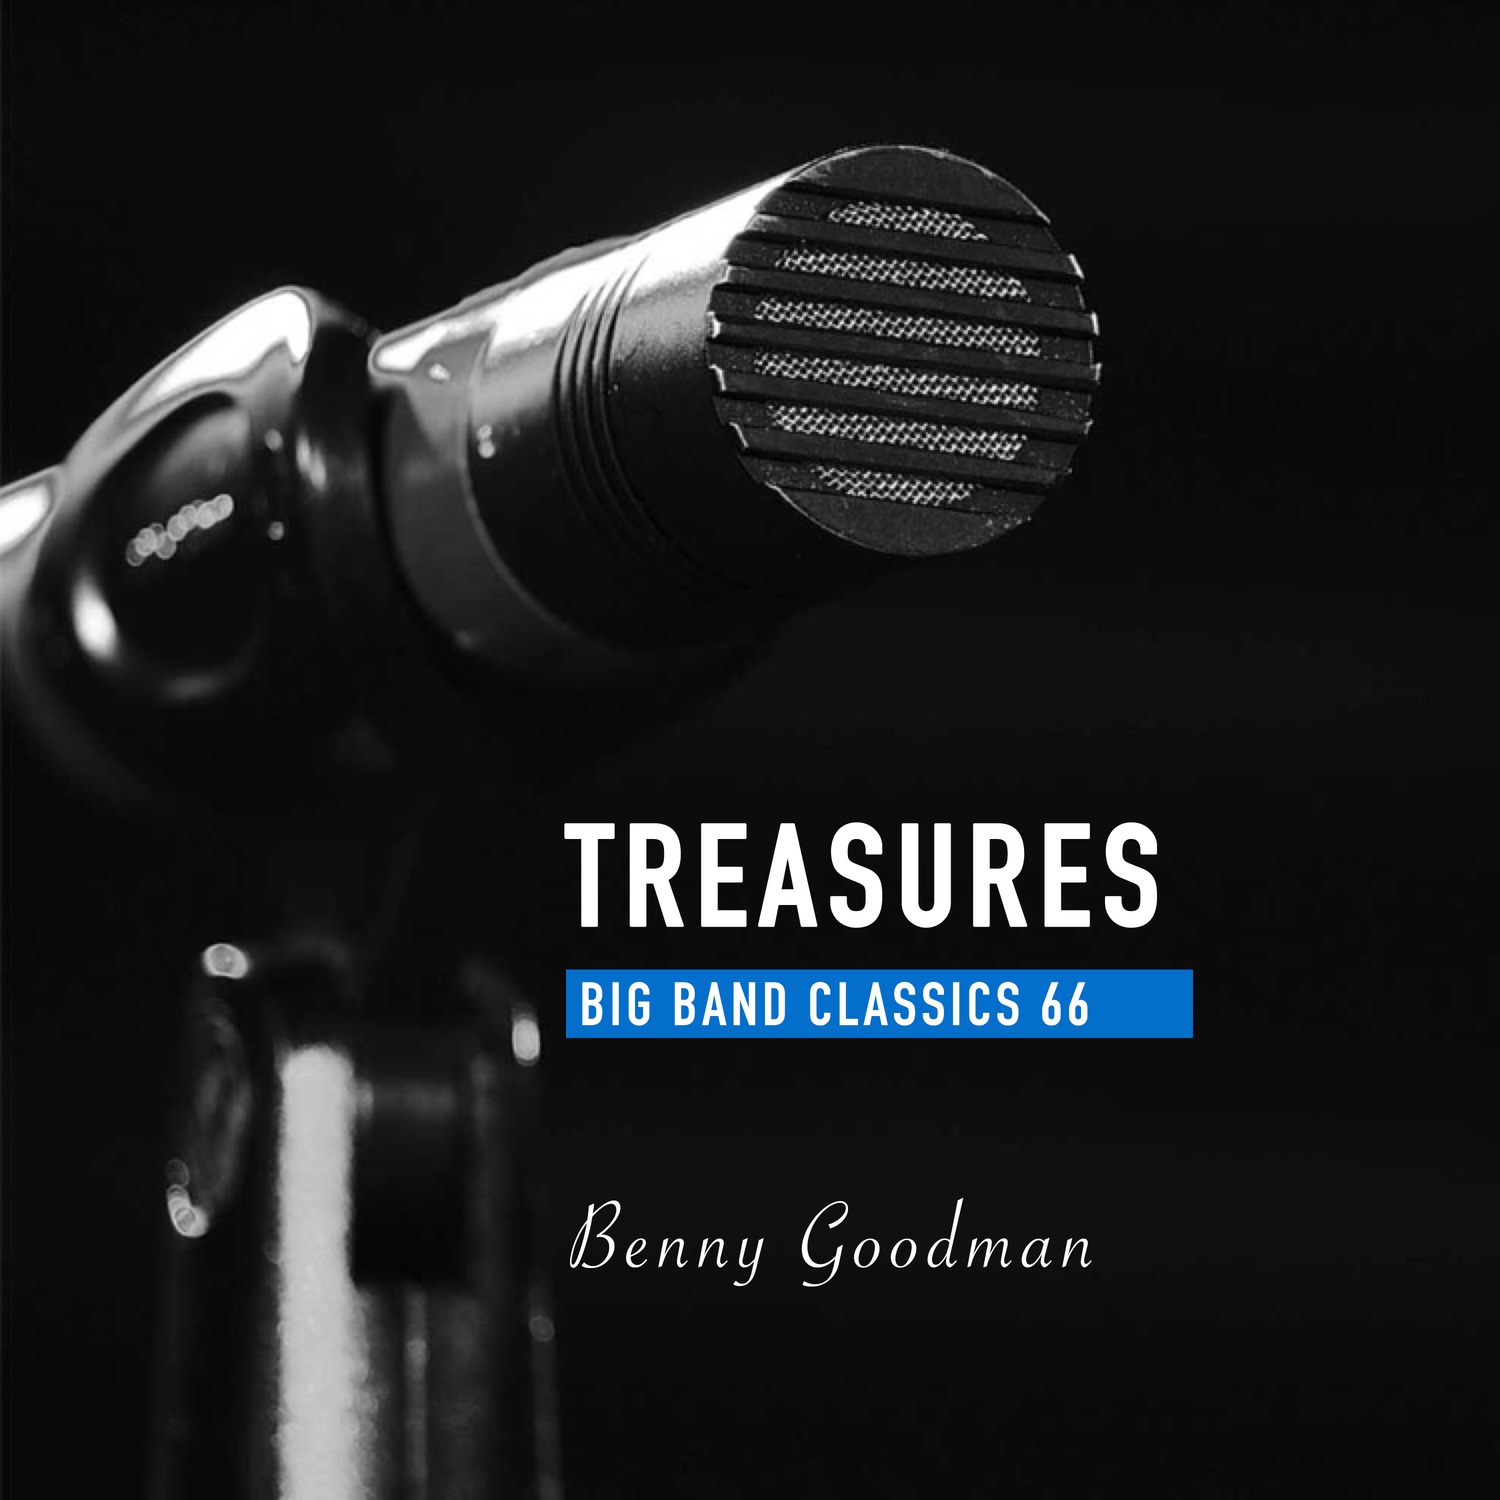 Treasures Big Band Classics, Vol. 66: Benny Goodman